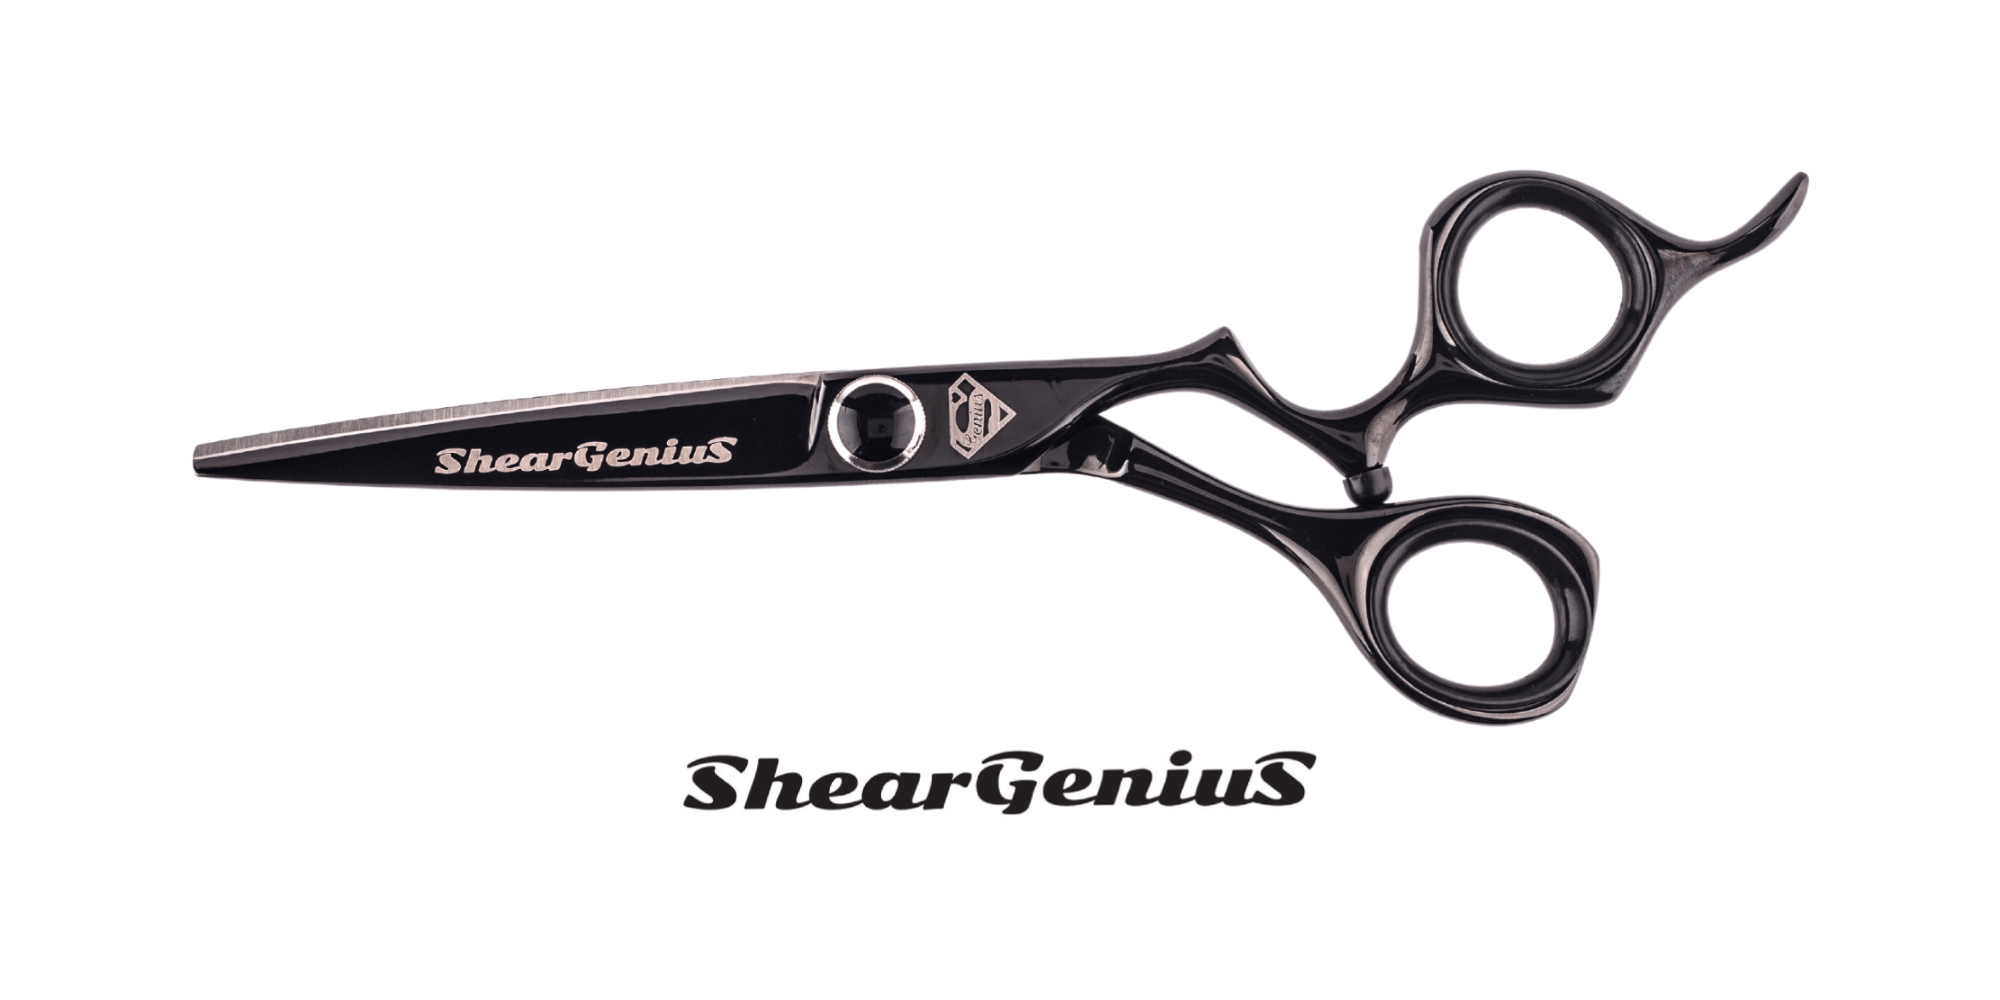 ShearGenius Hairdressing Scissor 6.0 inch Emperor Professional Hairdressing scissors